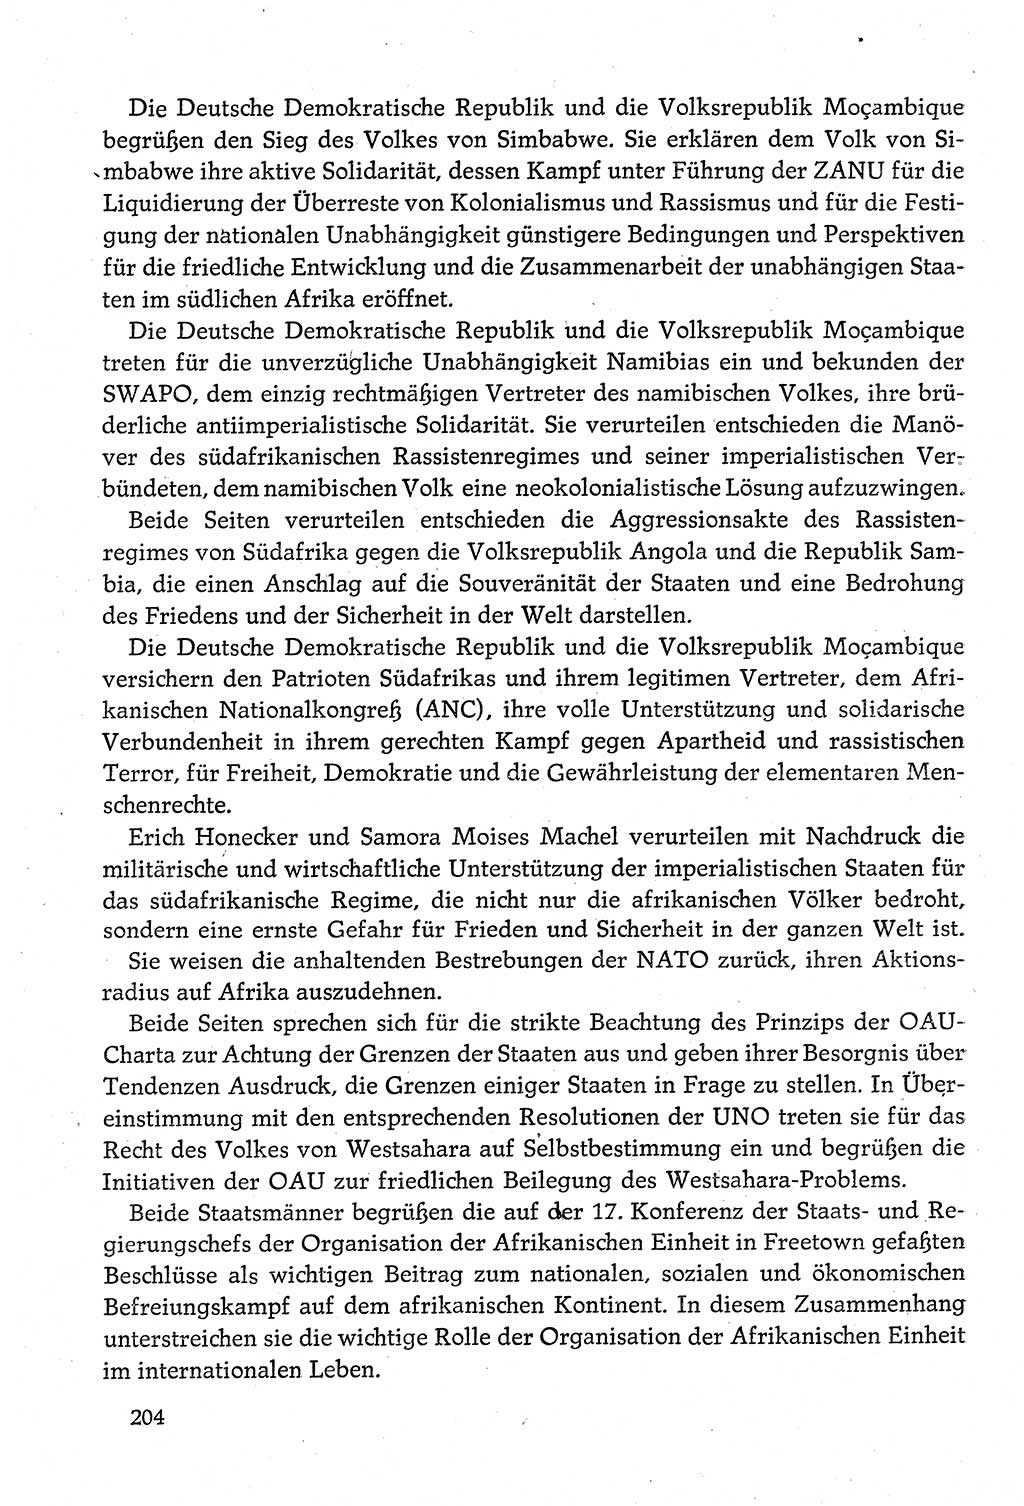 Dokumente der Sozialistischen Einheitspartei Deutschlands (SED) [Deutsche Demokratische Republik (DDR)] 1980-1981, Seite 204 (Dok. SED DDR 1980-1981, S. 204)